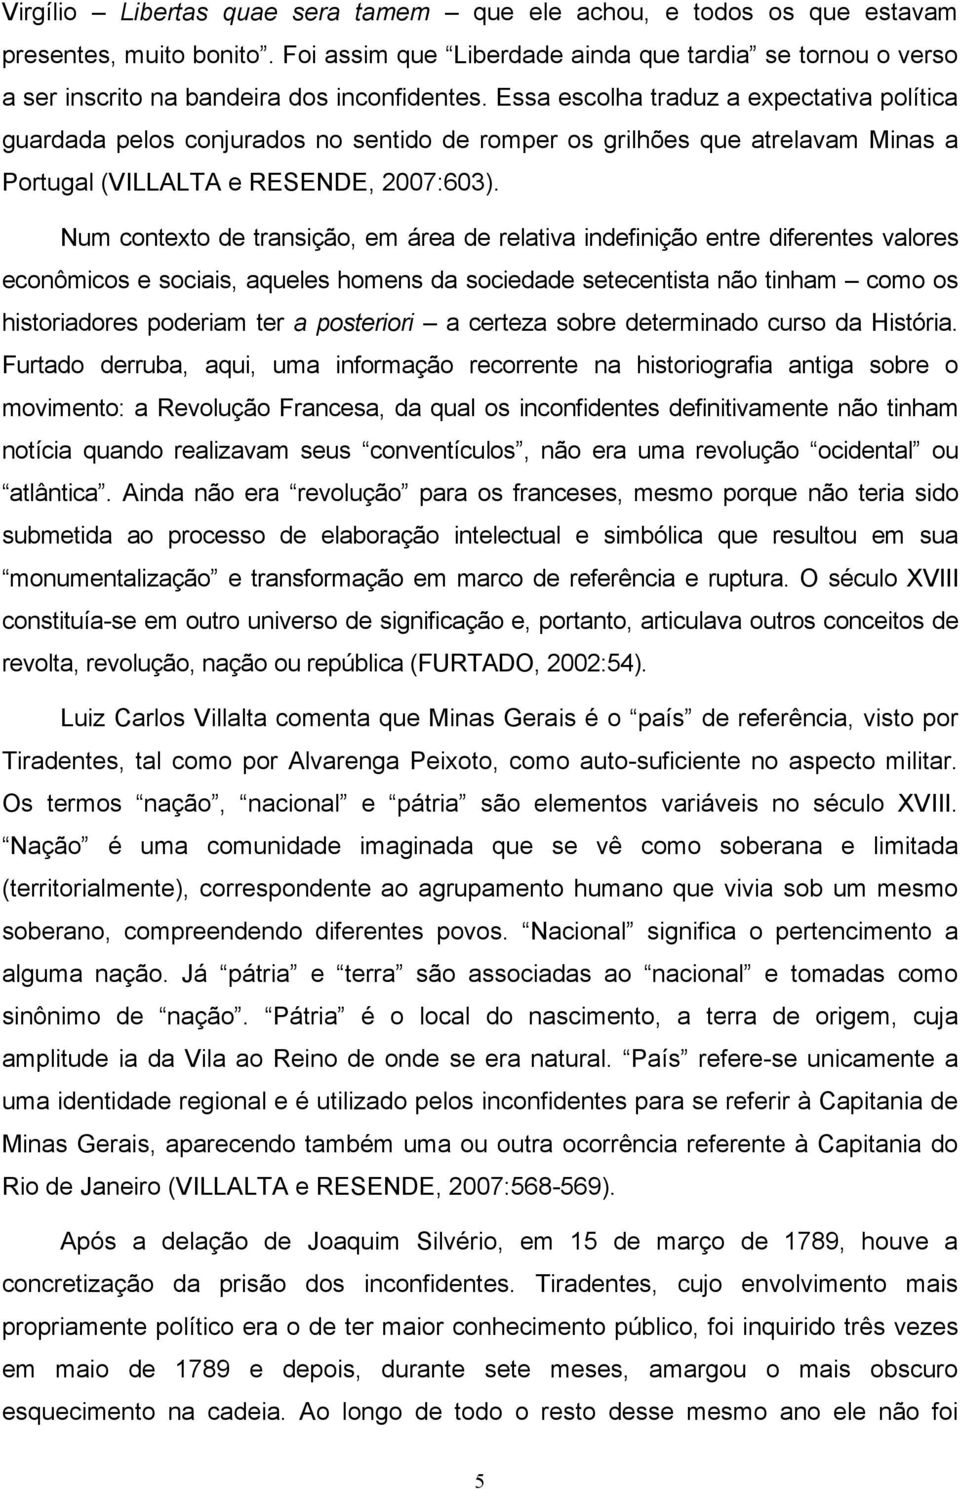 Essa escolha traduz a expectativa política guardada pelos conjurados no sentido de romper os grilhões que atrelavam Minas a Portugal (VILLALTA e RESENDE, 2007:603).